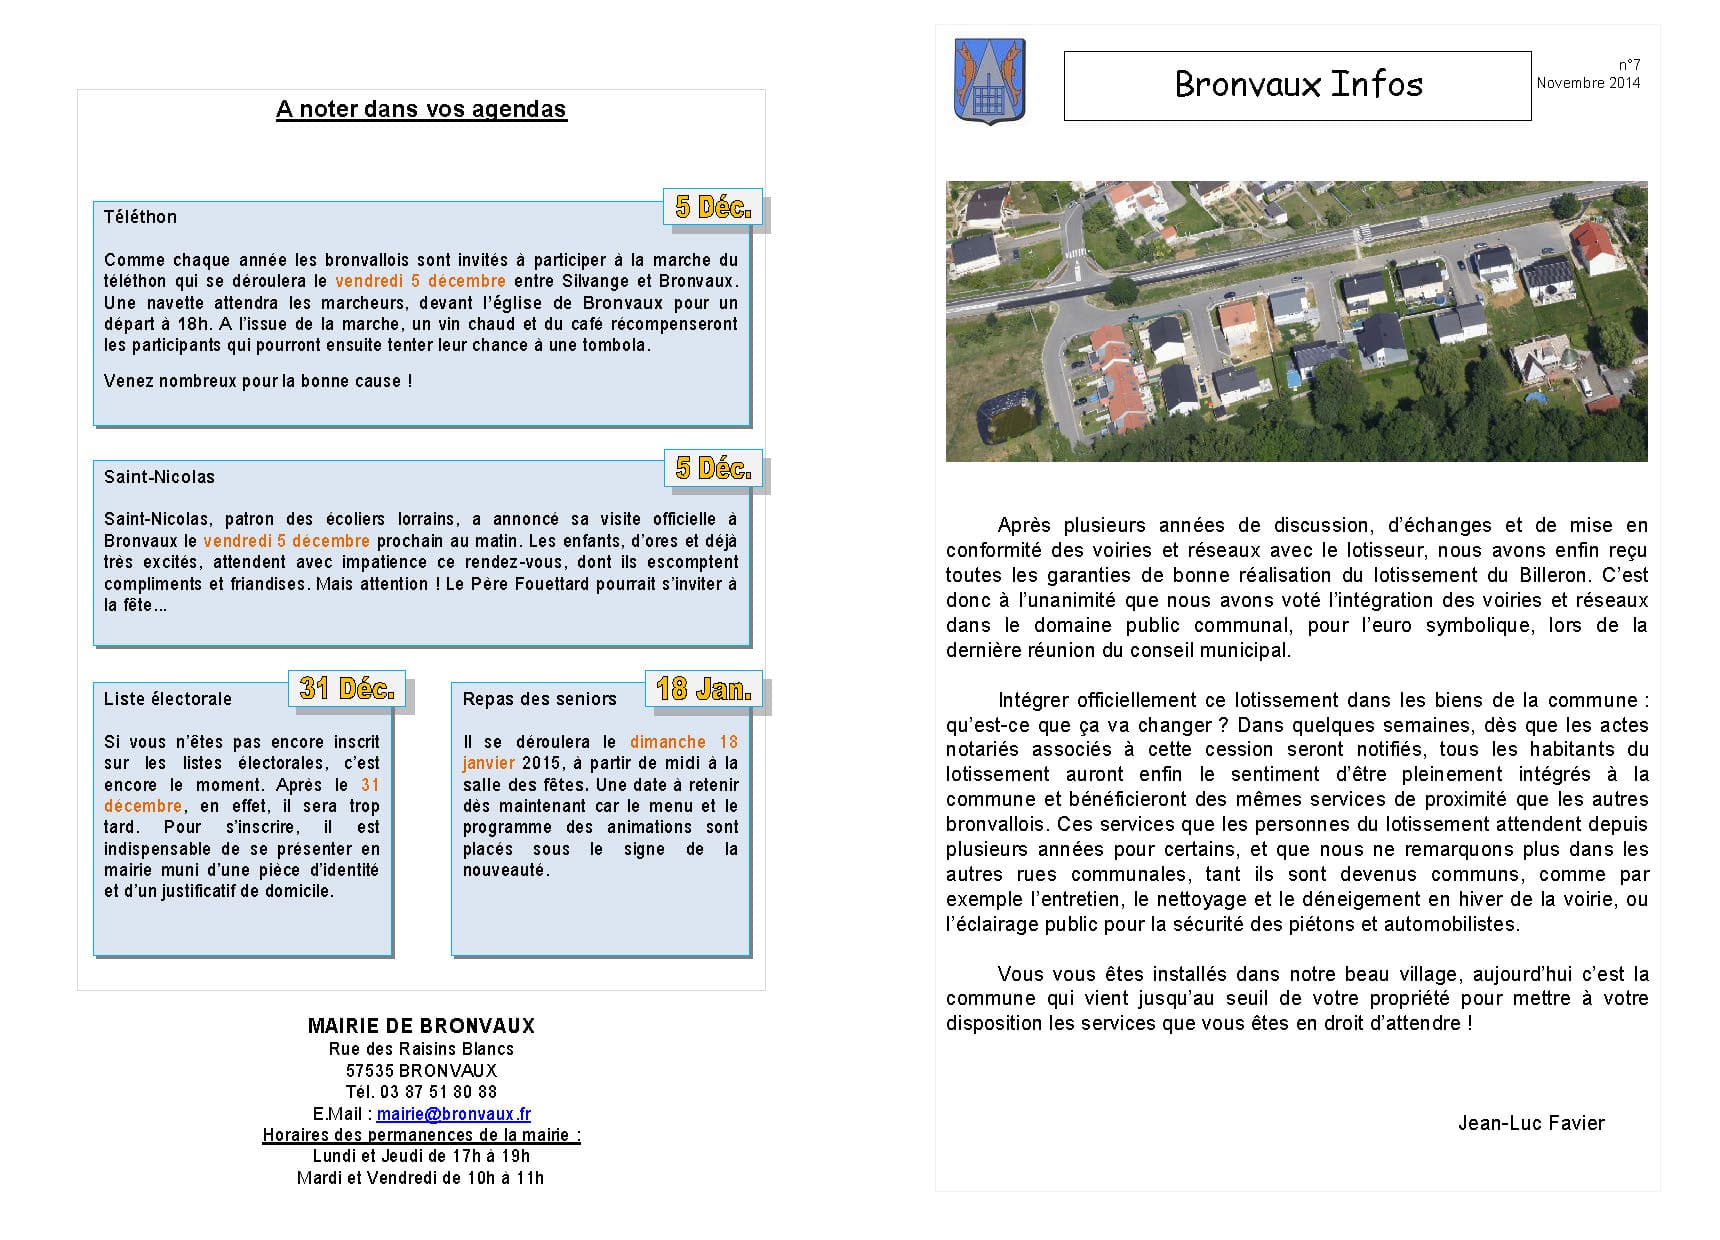 Bronvaux Infos novembre 2014